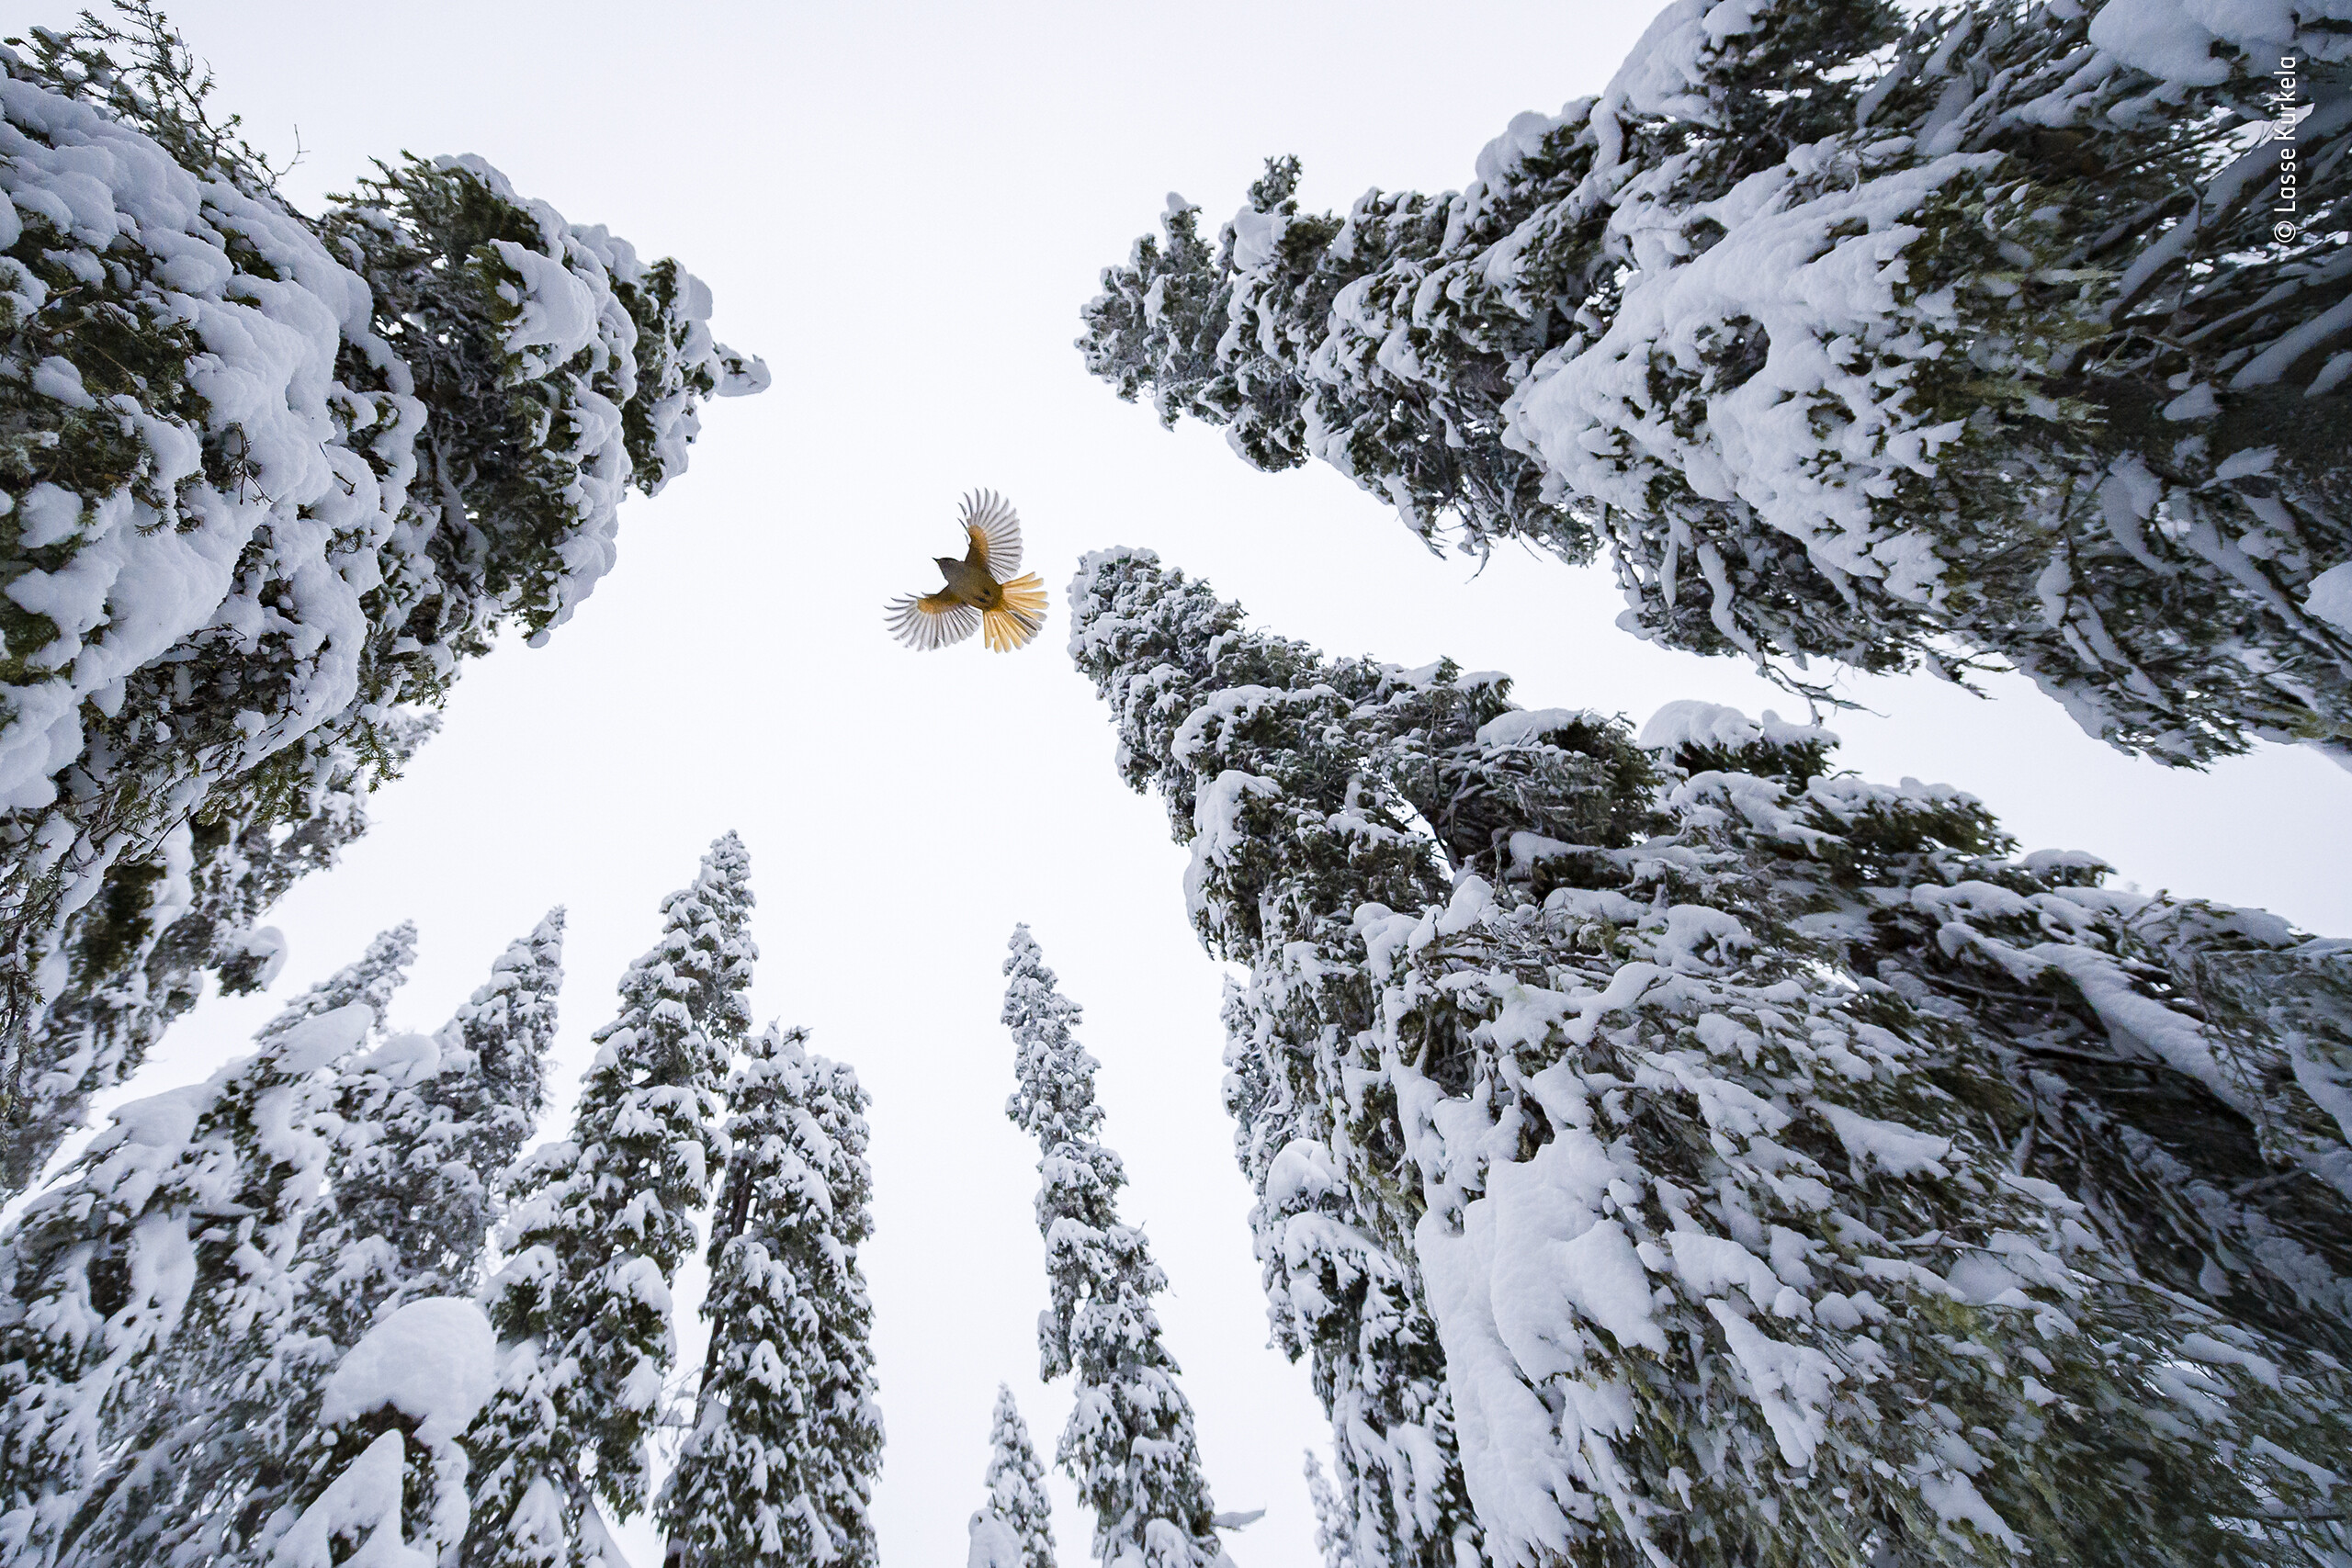 «Юный фотограф дикой природы» в номинации 15-17 лет, 2021. Сибирская сойка взлетает на верхушку ели, чтобы припрятать пищу. Автор Лассе Куркела